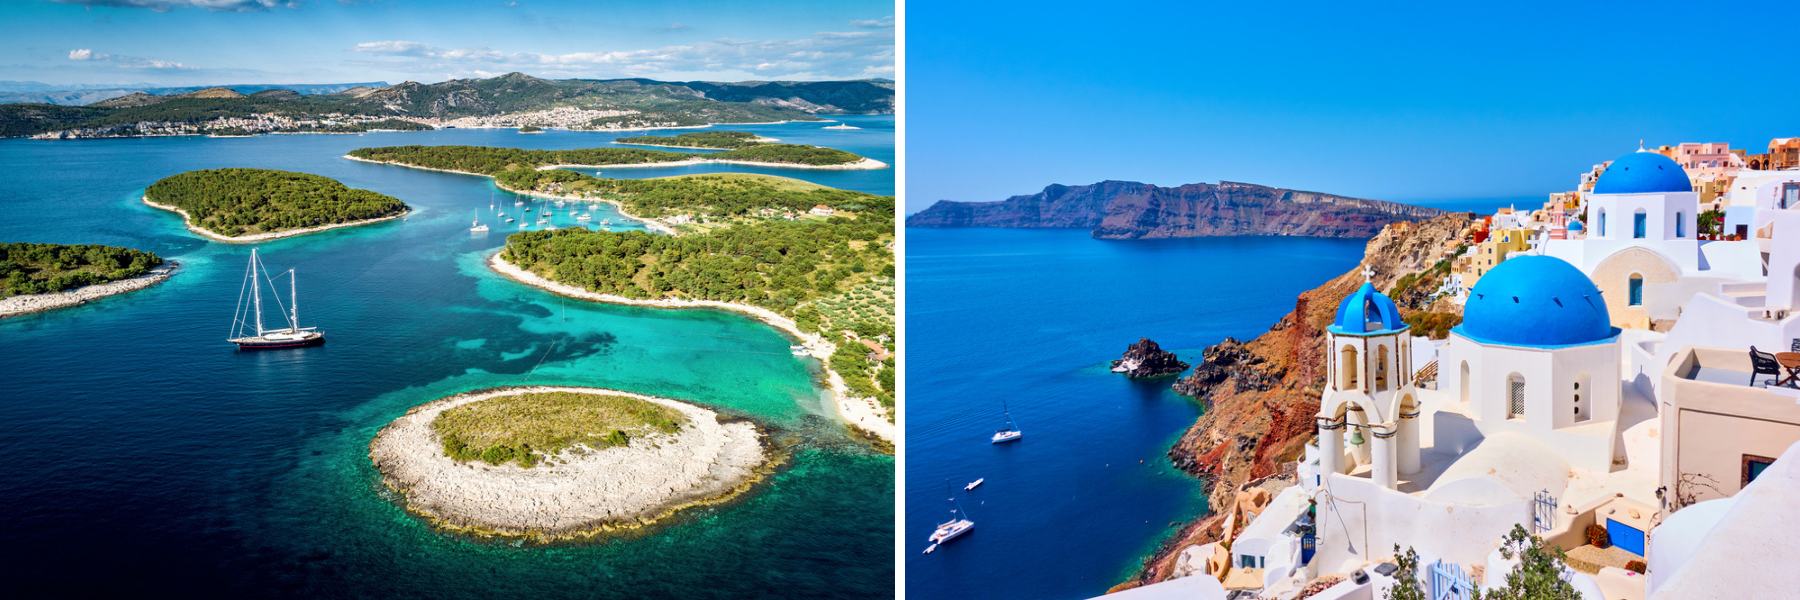 Chorvatsko i Řecko jsou zeměmi ostrovů.